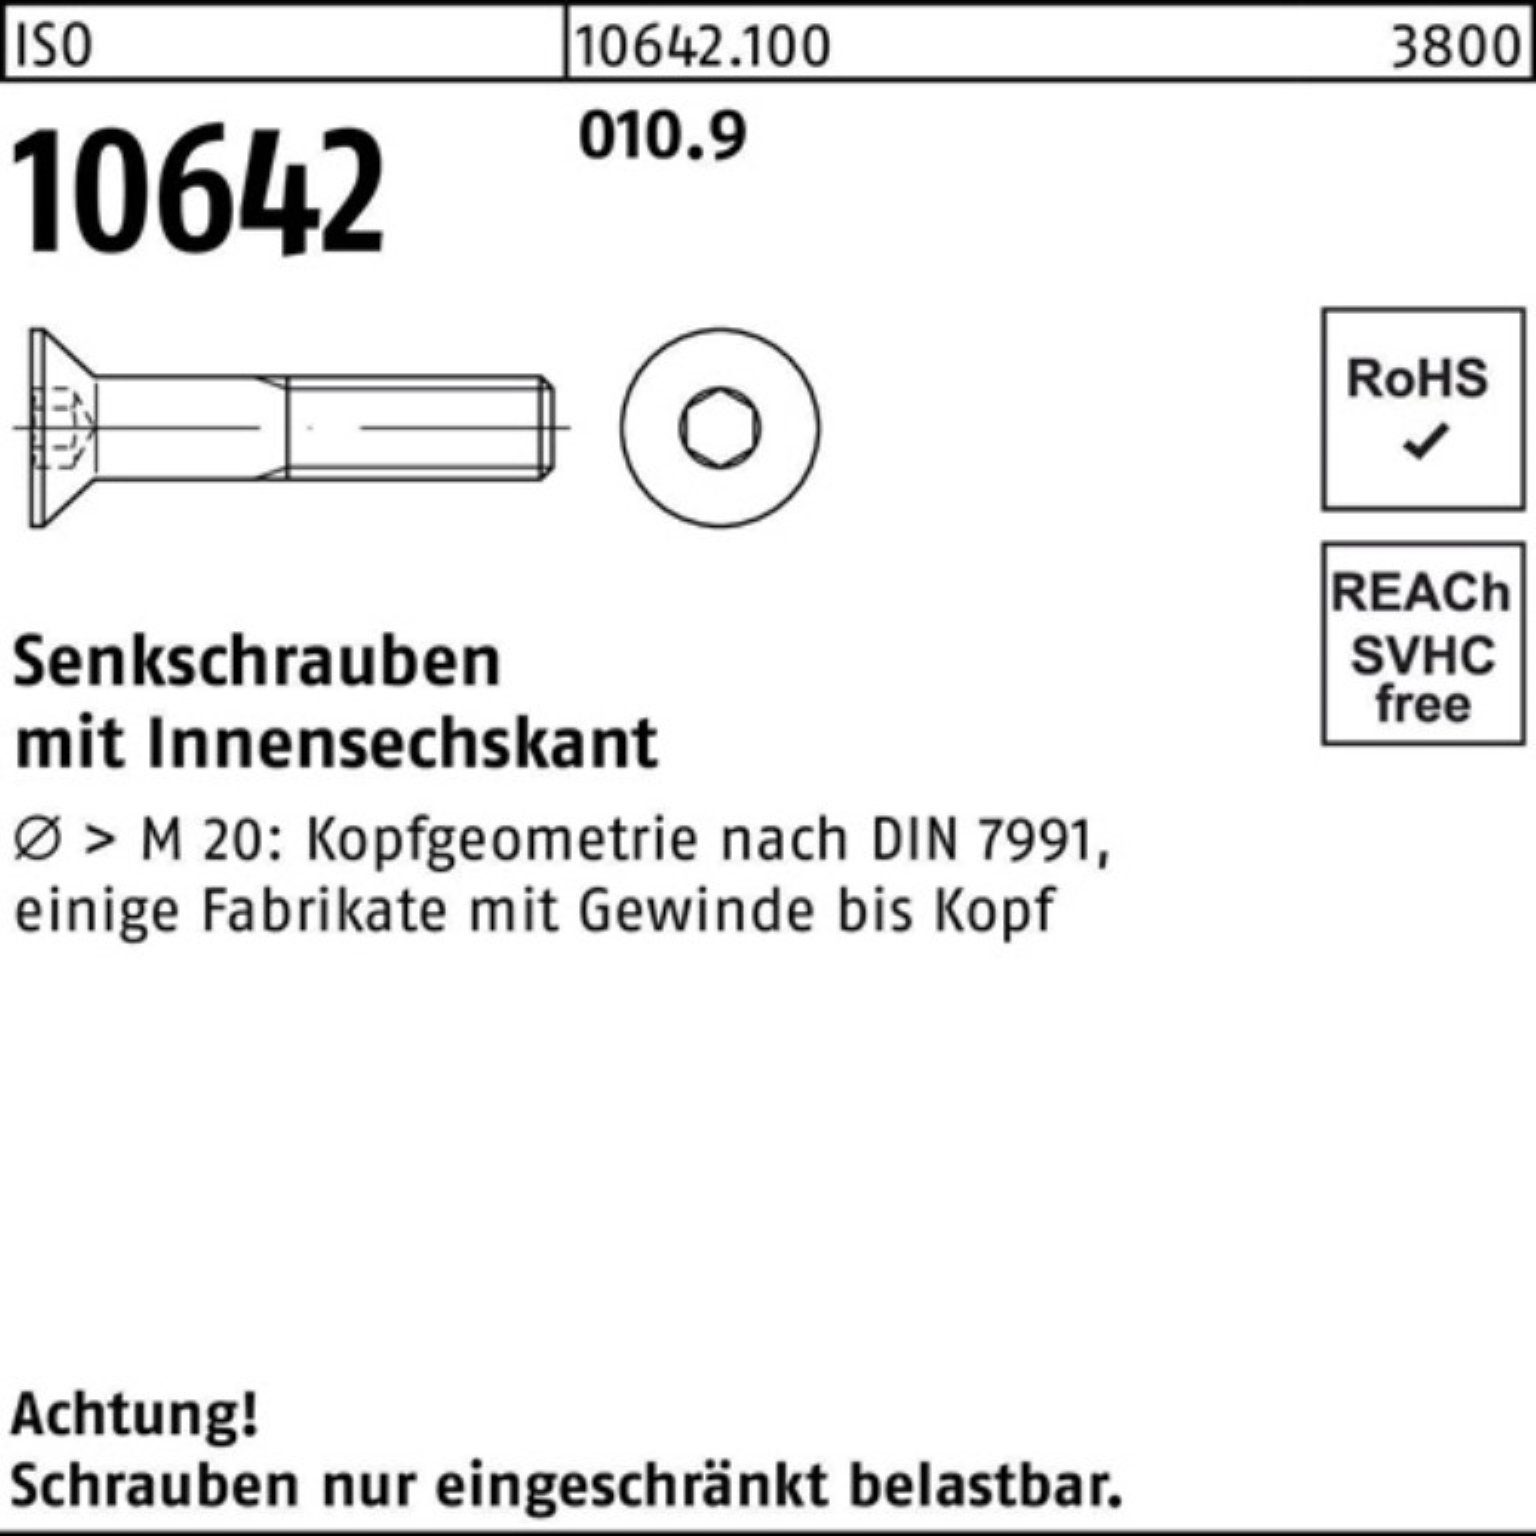 Reyher Senkschraube 010.9 500 Pack ISO Senkschraube 18 M5x Innen-6kt Stück 500er 10642 IS